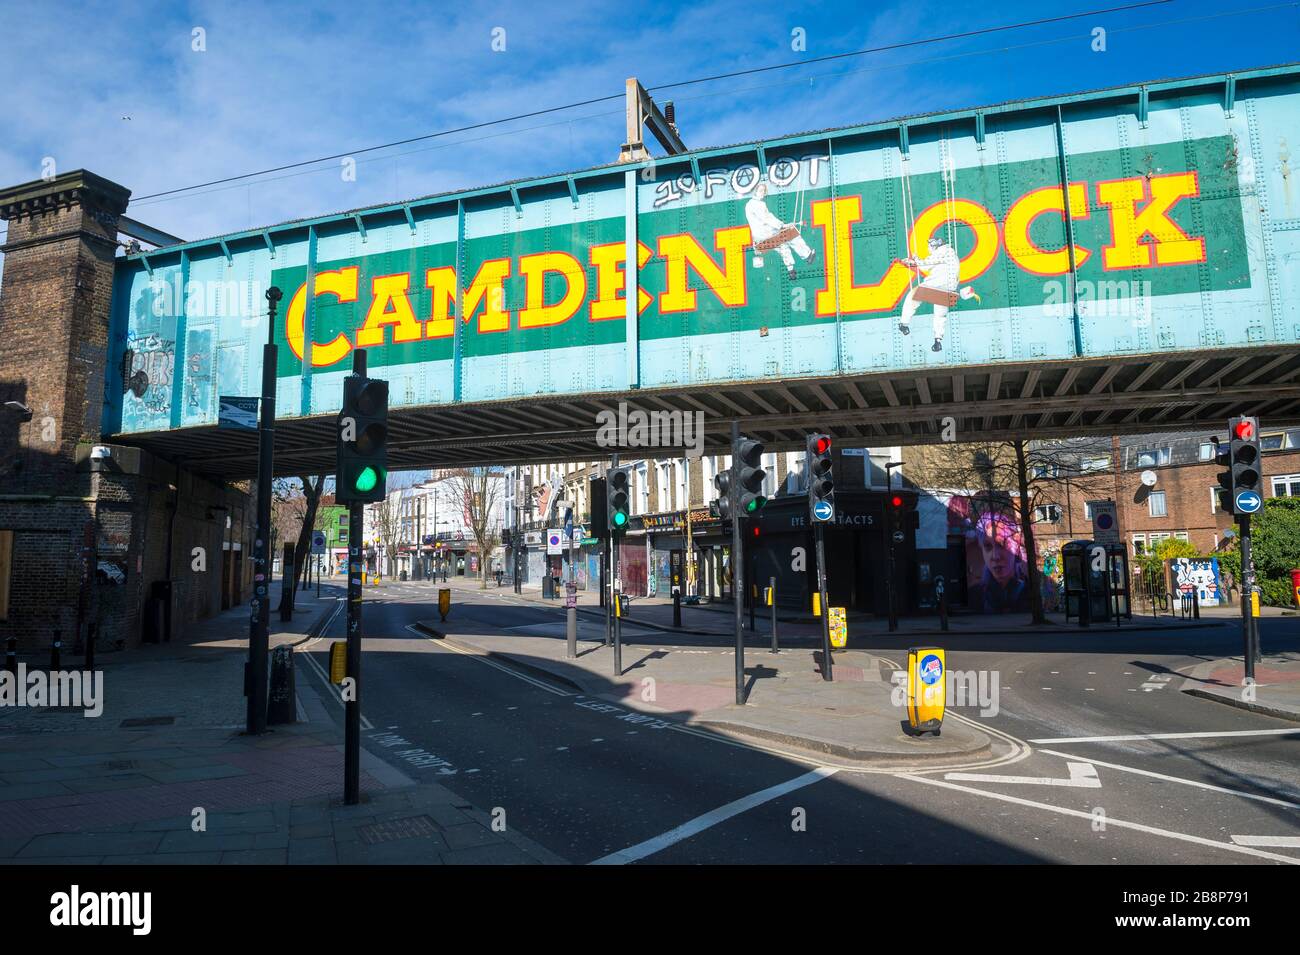 LONDON - 22. MÄRZ 2020: Normalerweise sind die belebten Straßen rund um den berühmten Camden-Markt verlassen, während die Stadt unter Coronavirus Sperrungen leidet. Stockfoto